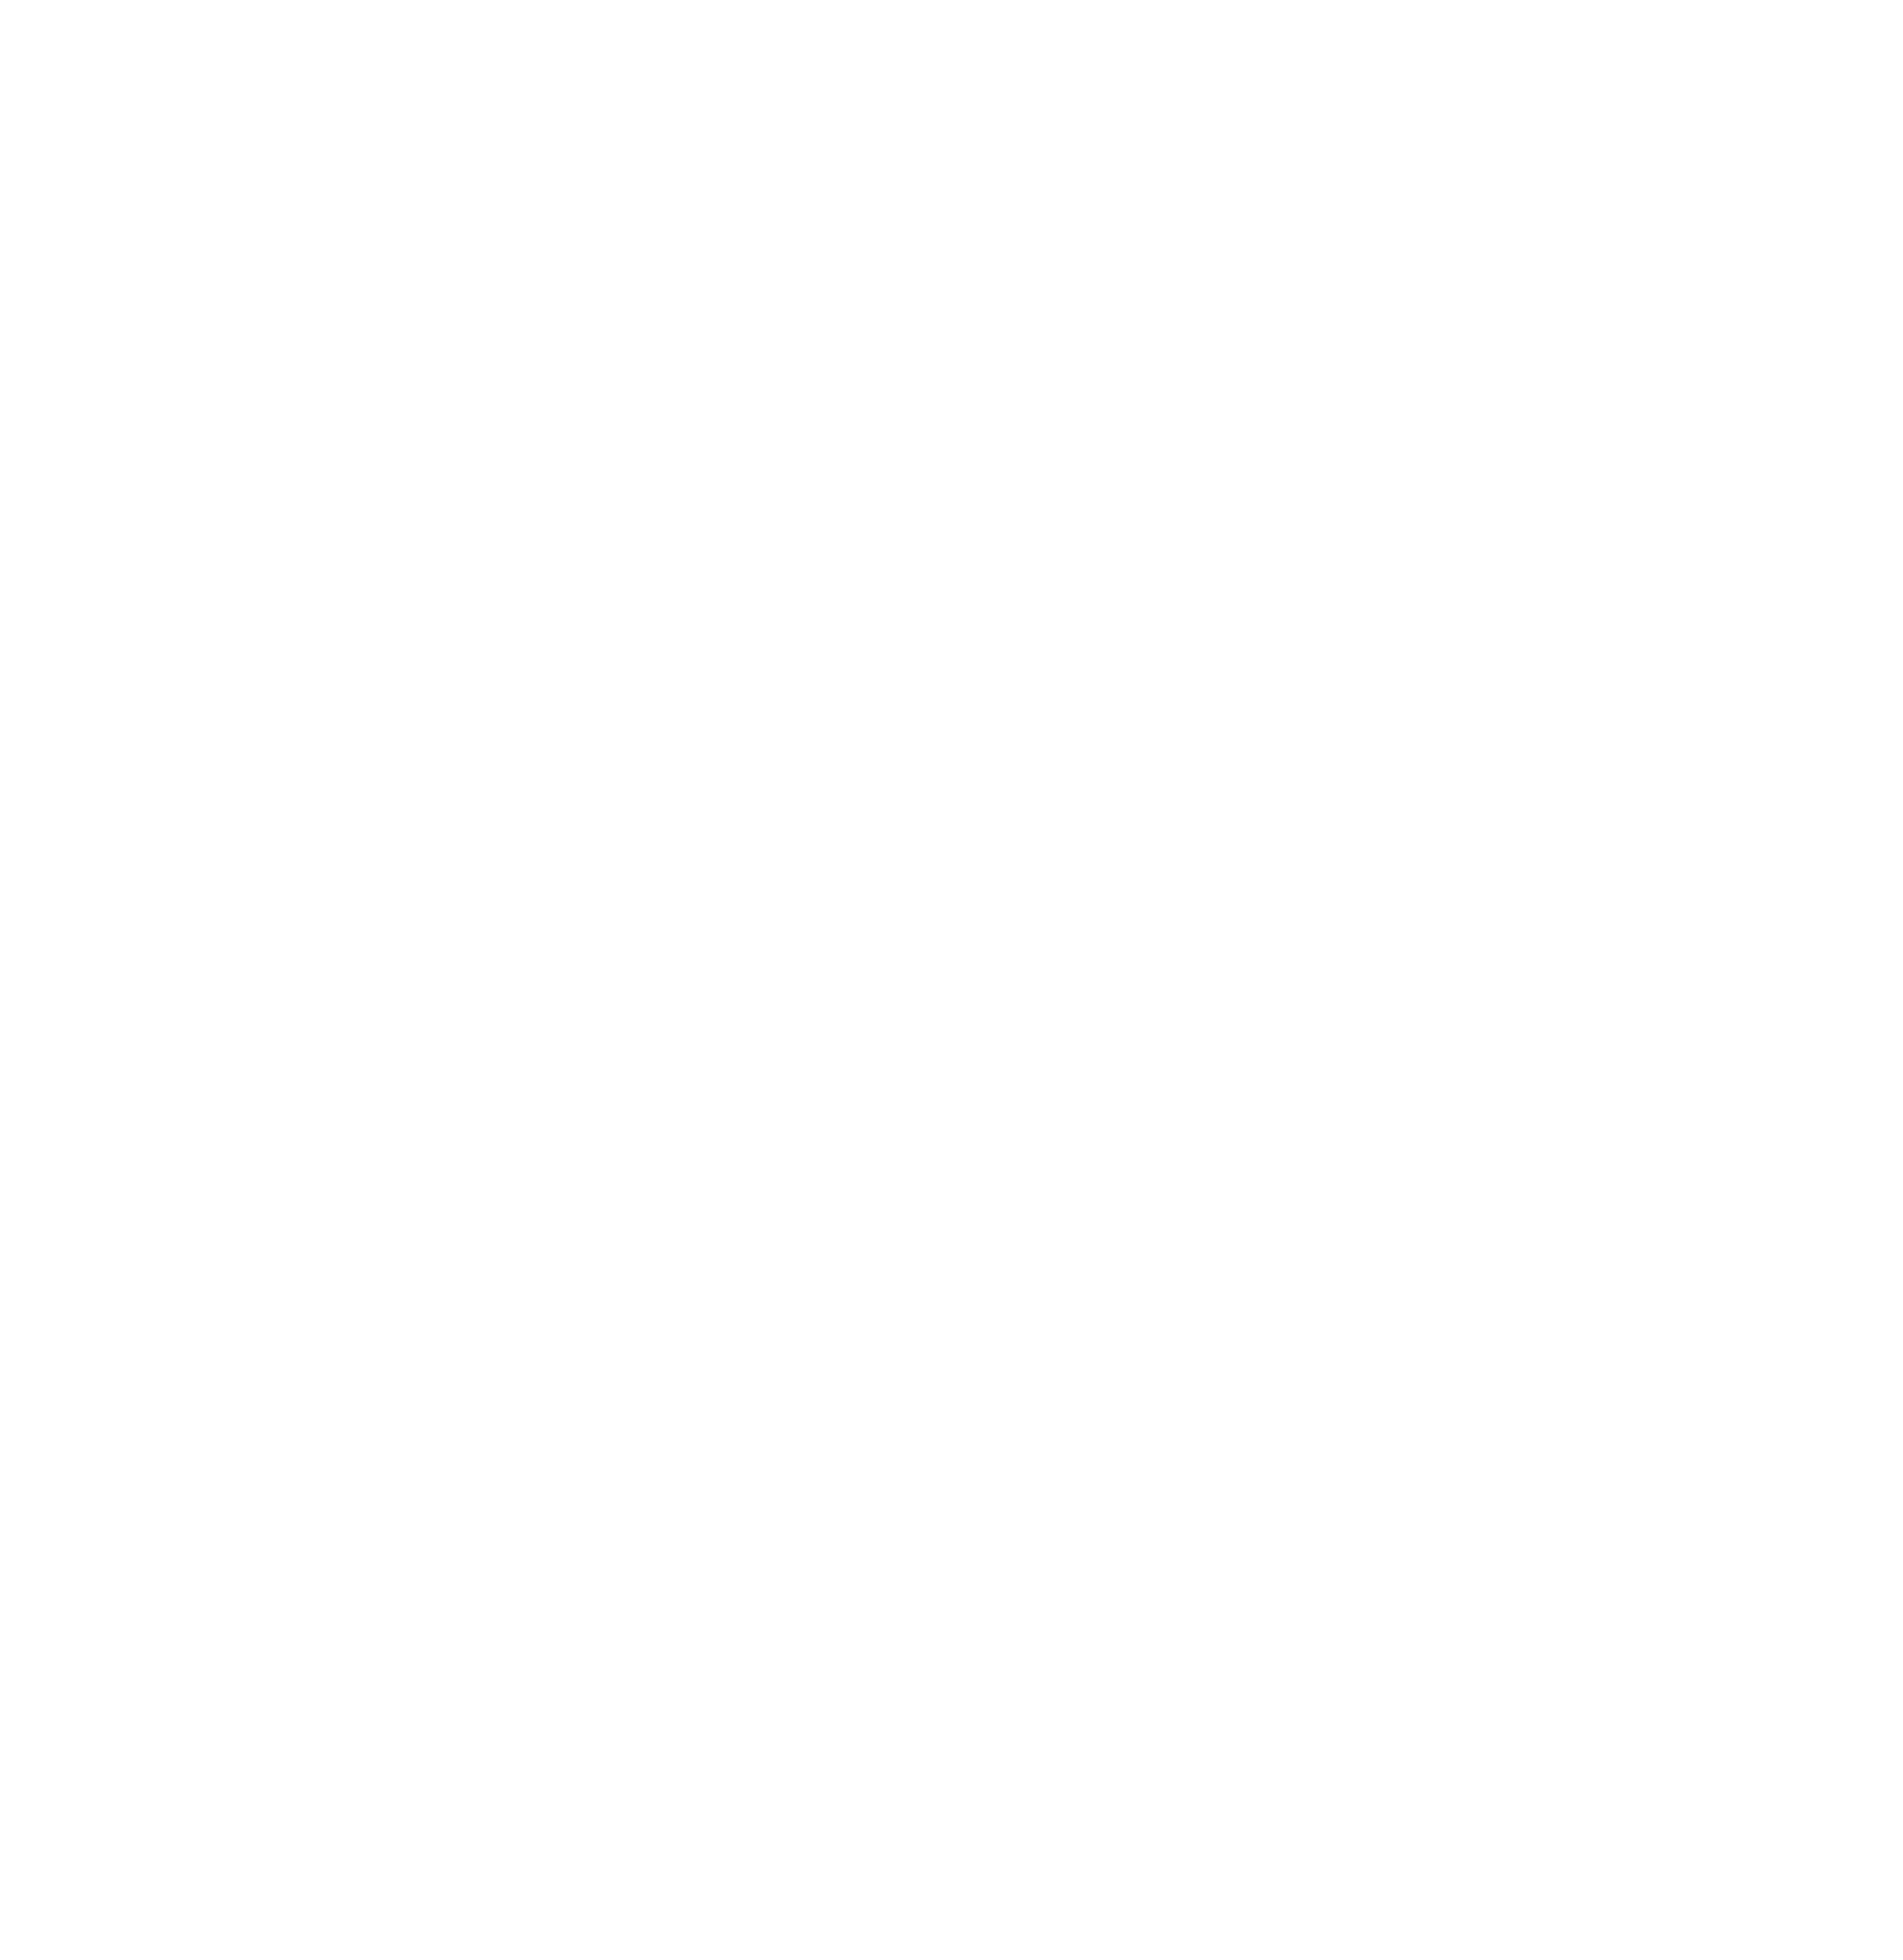 Naturstoffküche Freiburg Logo weiß